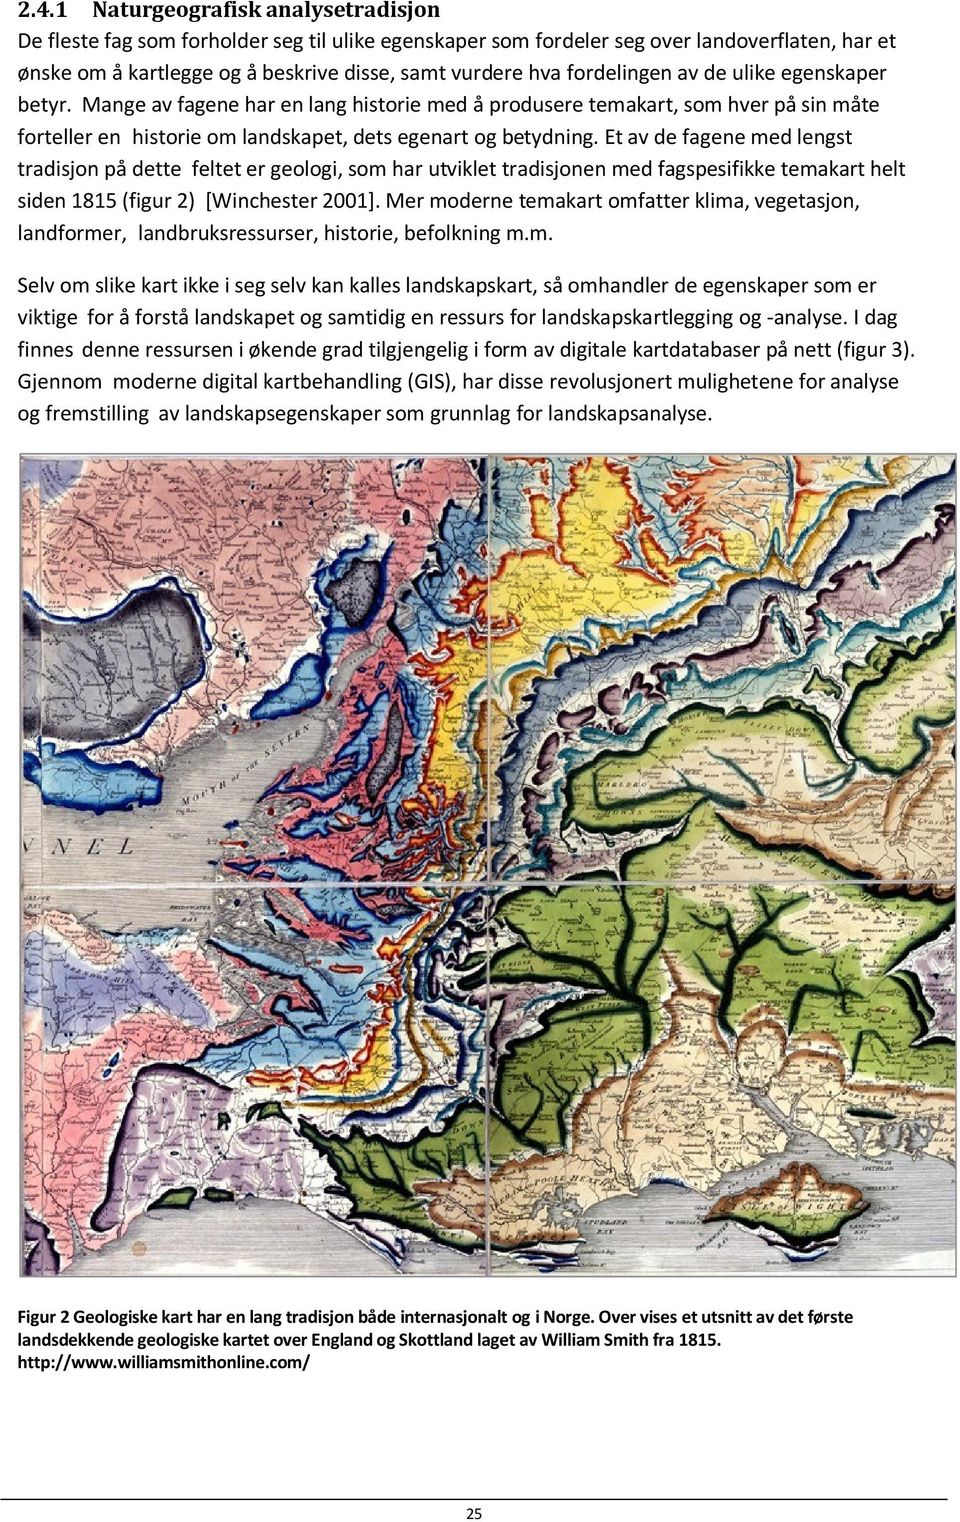 Et av de fagene med lengst tradisjon på dette feltet er geologi, som har utviklet tradisjonen med fagspesifikke temakart helt siden 1815 (figur 2) [Winchester 2001].